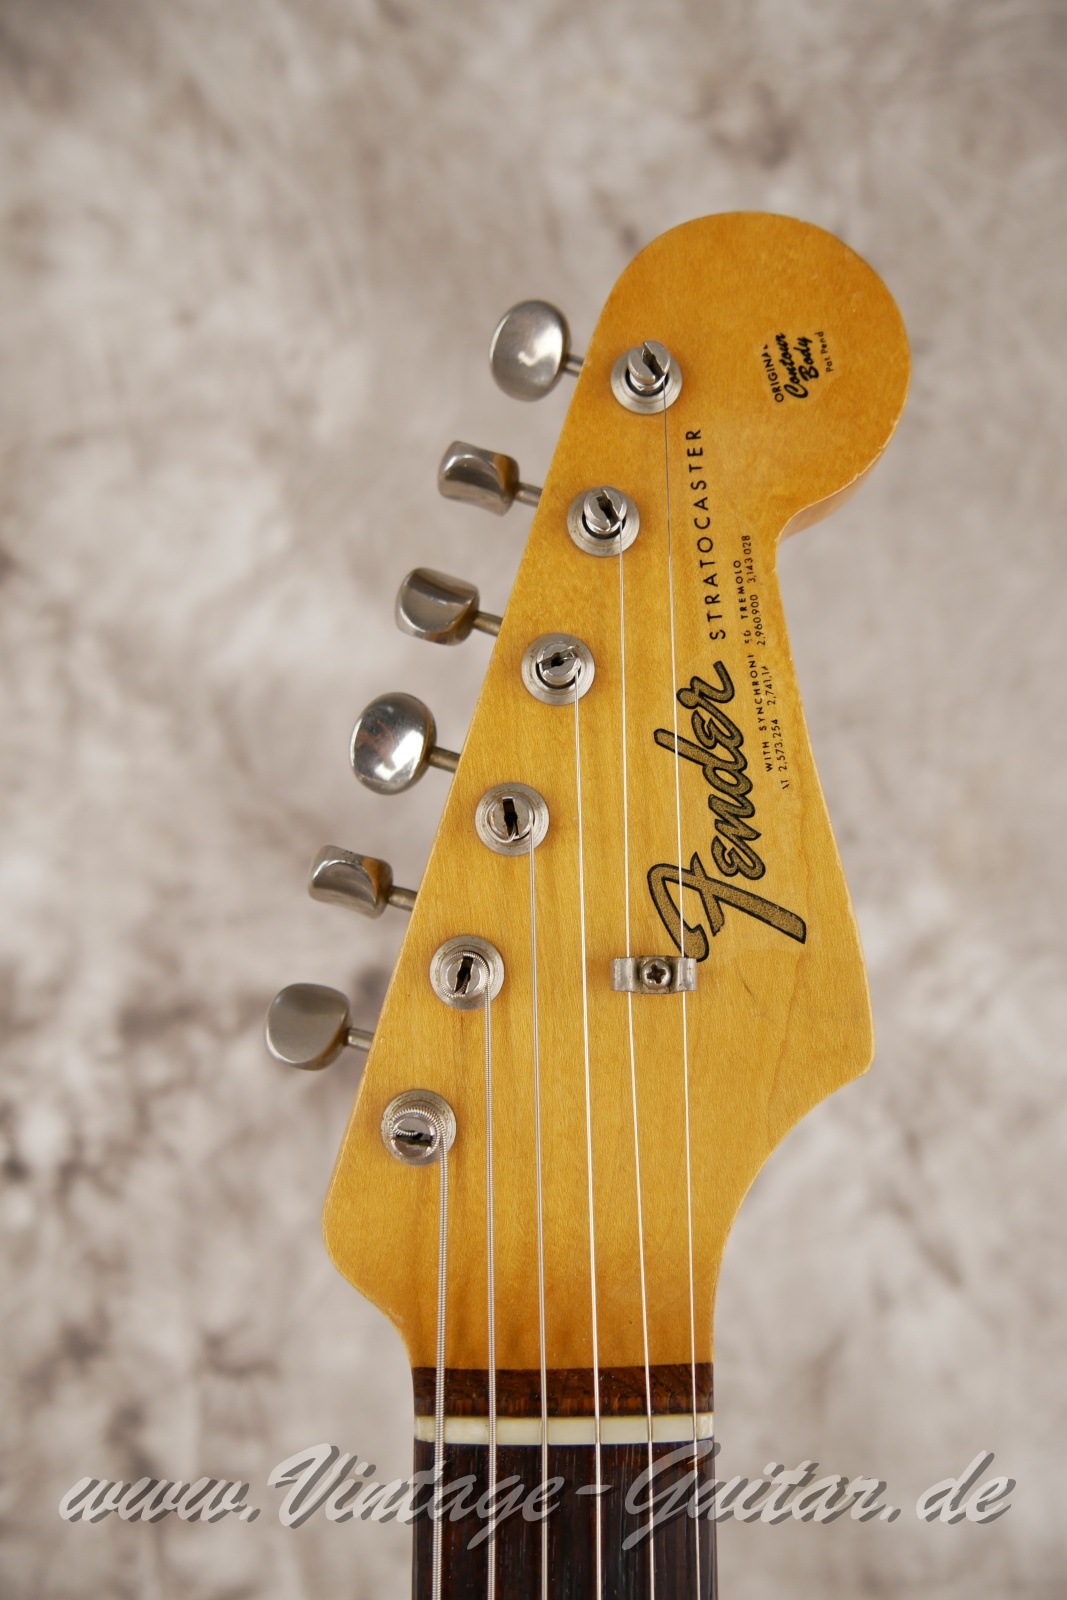 Fender-Stratocaster-1965-sunburst-005.JPG